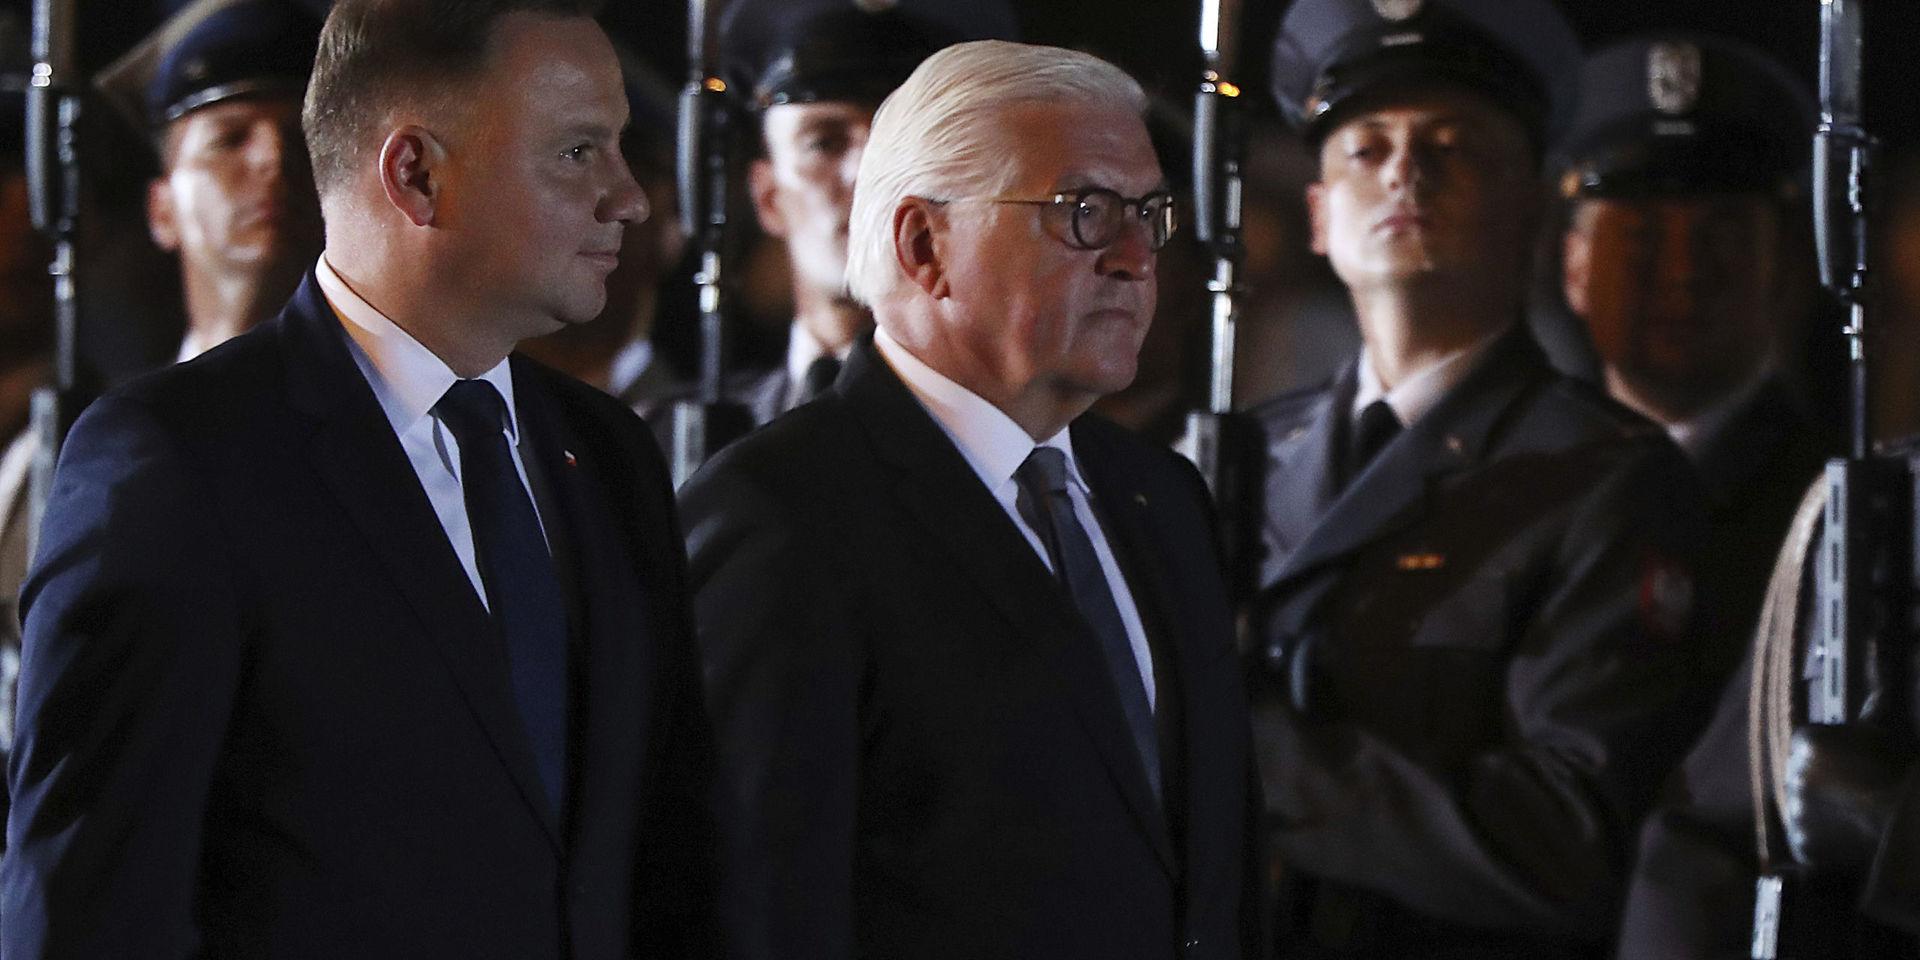 Tysklands förbundspresident Frank-Walter Steinmeier (till höger) deltog i en minnesceremoni i Wieluń tillsammans med Polens president Andrzej Duda (till vänster).